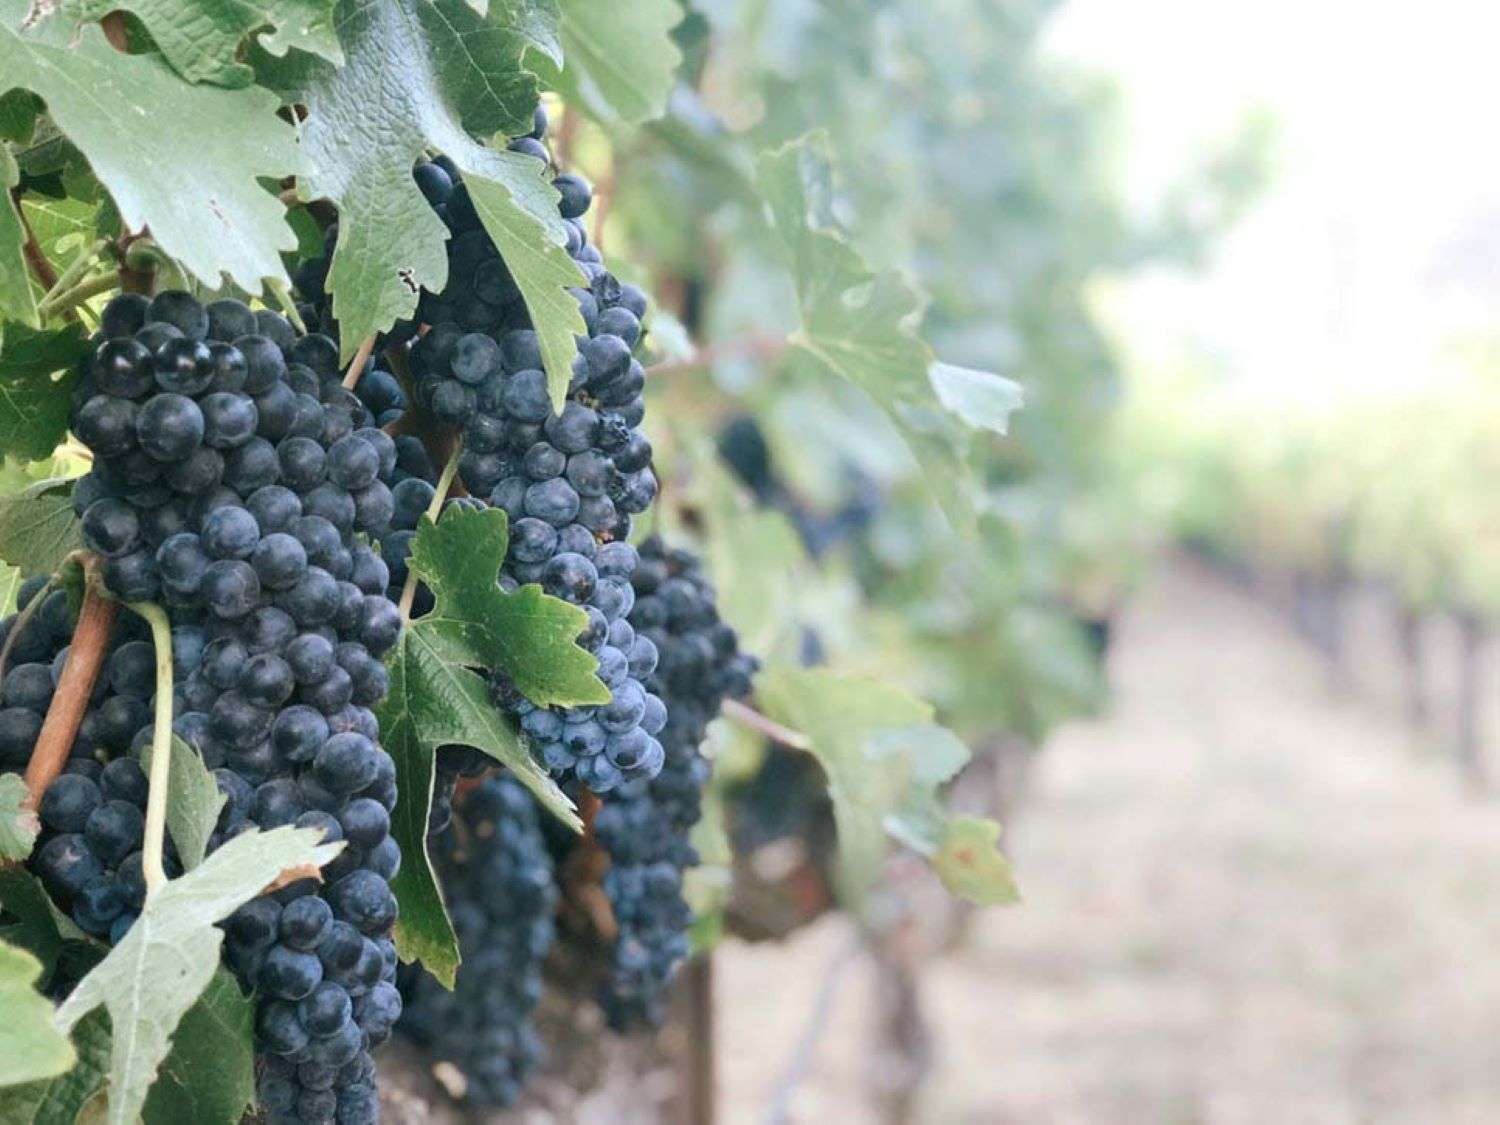 Numeri da copogiro nel 2021 per i vini piemontesi del Consorzio